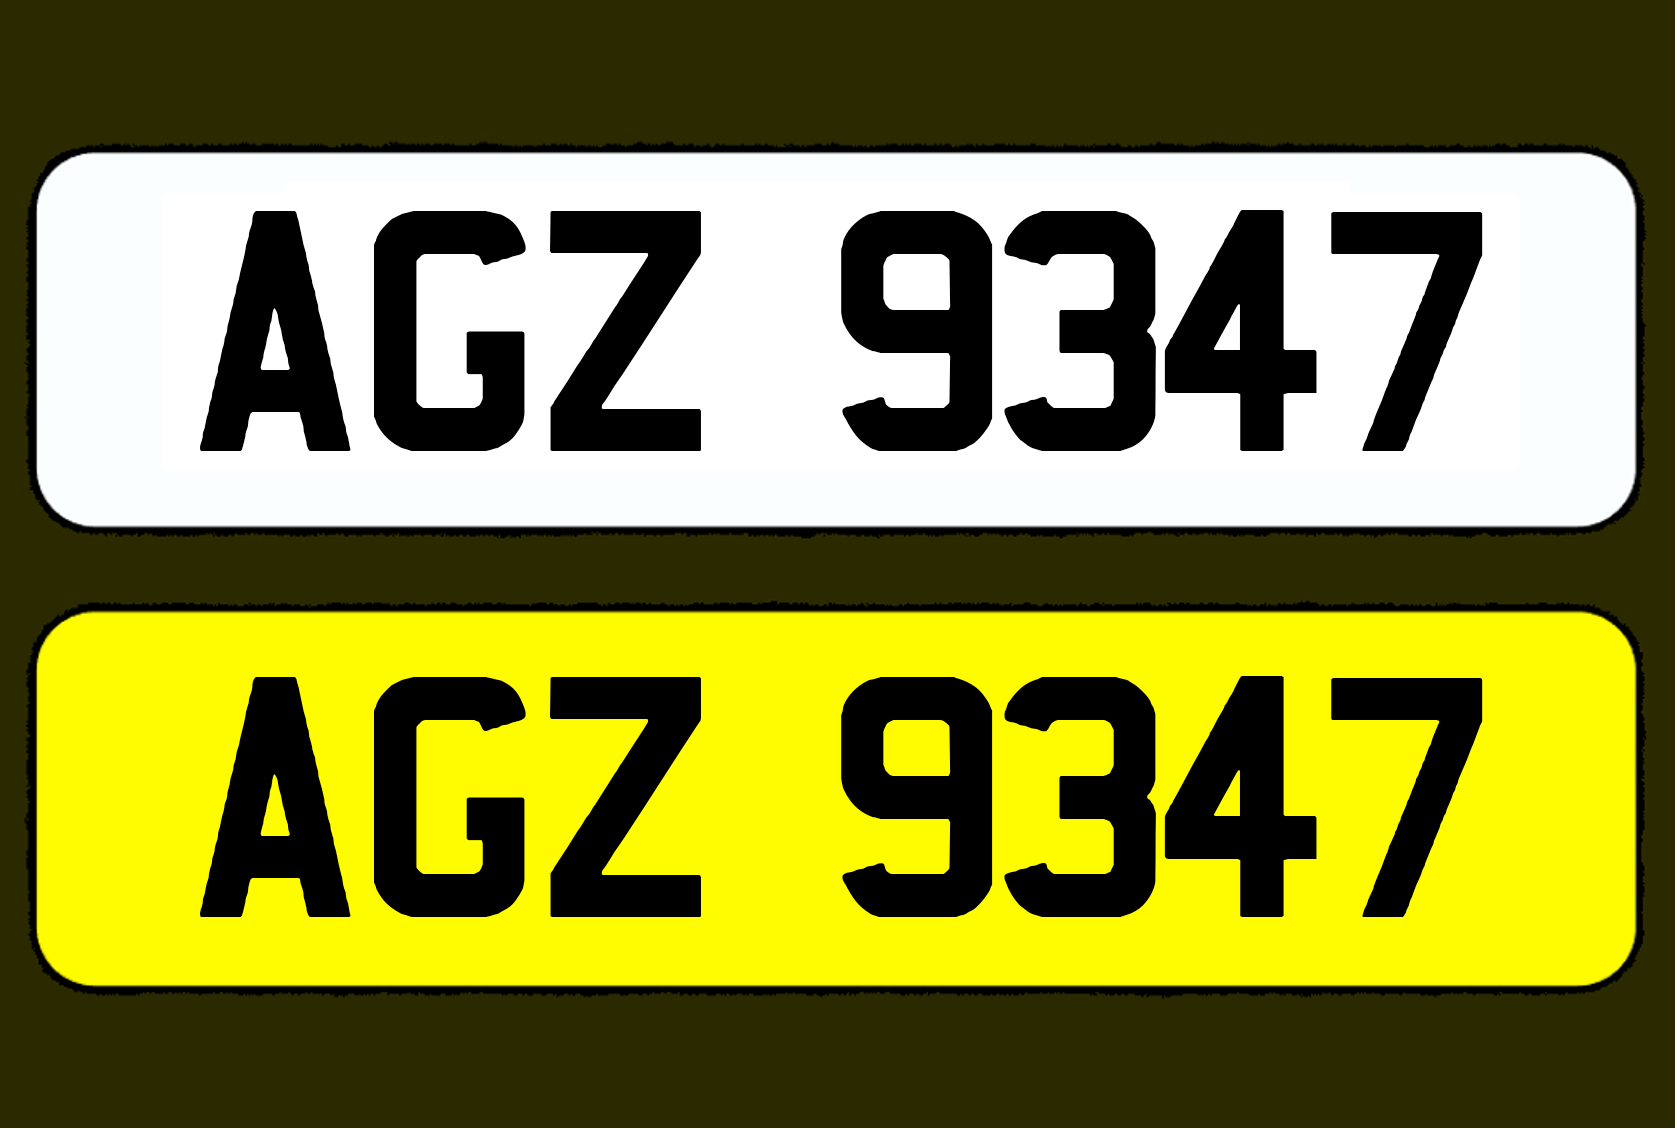 AGZ 9347